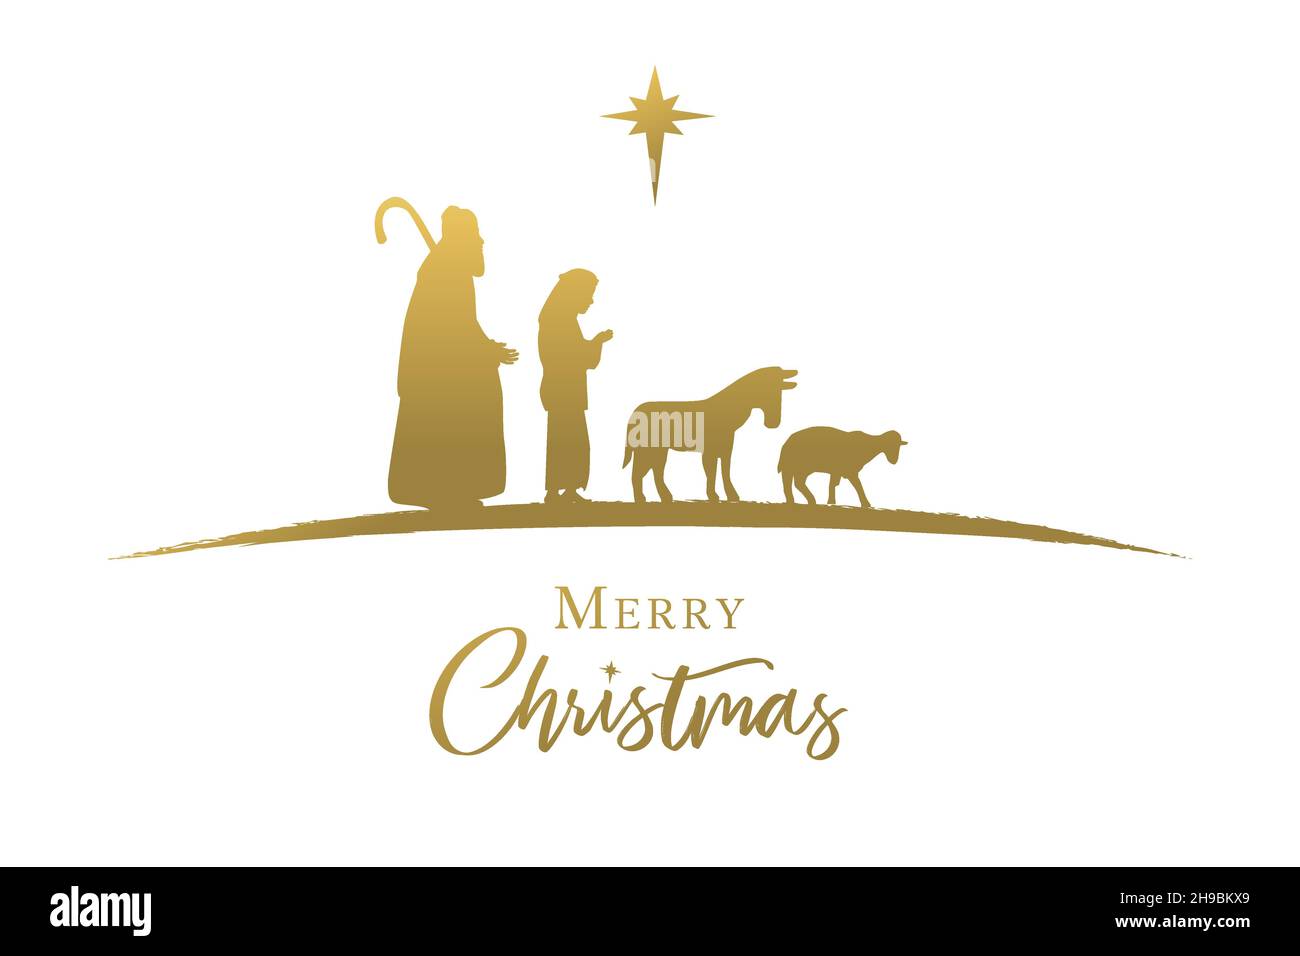 Bergers, âne et brebis silhouette dorée, scène de la nativité.Joyeux Noël élégant lettrage calligraphie.Lettrage chrétien et étoile d'or Illustration de Vecteur